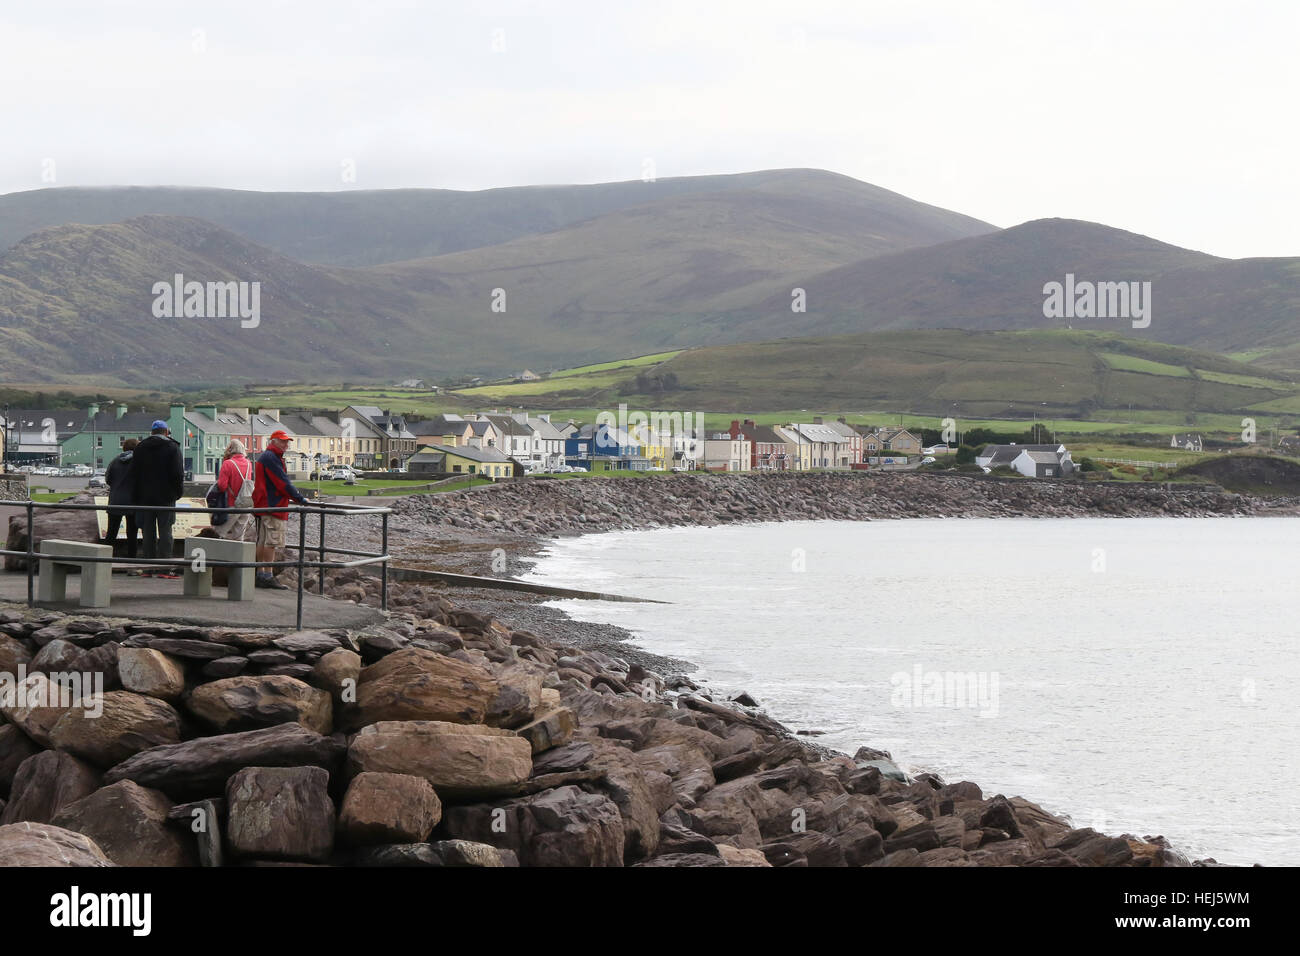 Les touristes sur la côte rocheuse surplombant la baie de Ballinskelligs dans le village de Waterville, dans le comté de Kerry. L'Irlande. Banque D'Images